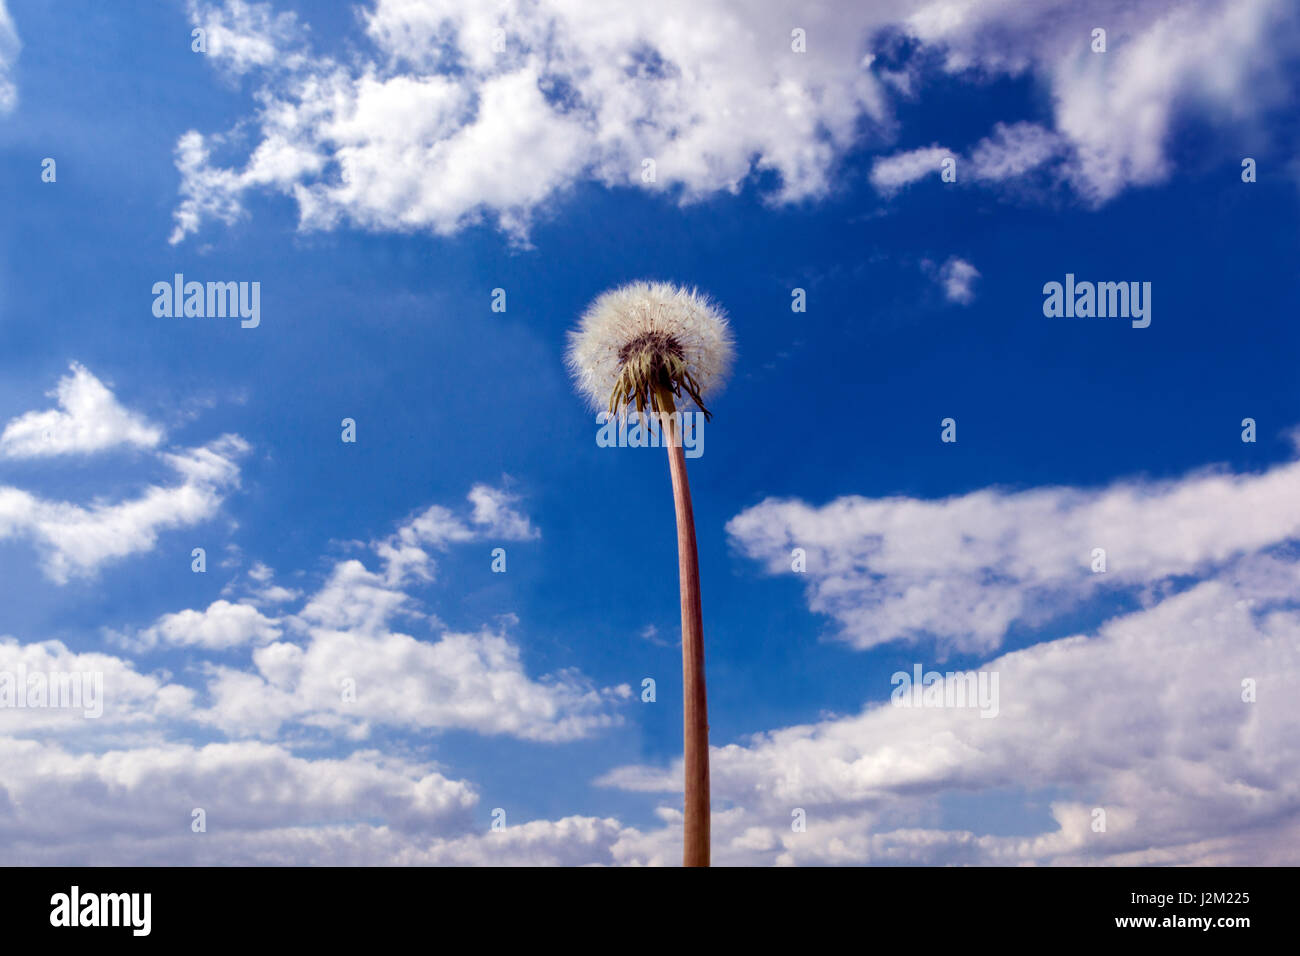 Löwenzahnkopf mit Samen auf dem Stiel, blauer Himmel Hintergrund Wolkendecke Taraxacum officinale mit Blick auf die Himmelspflanze Stockfoto